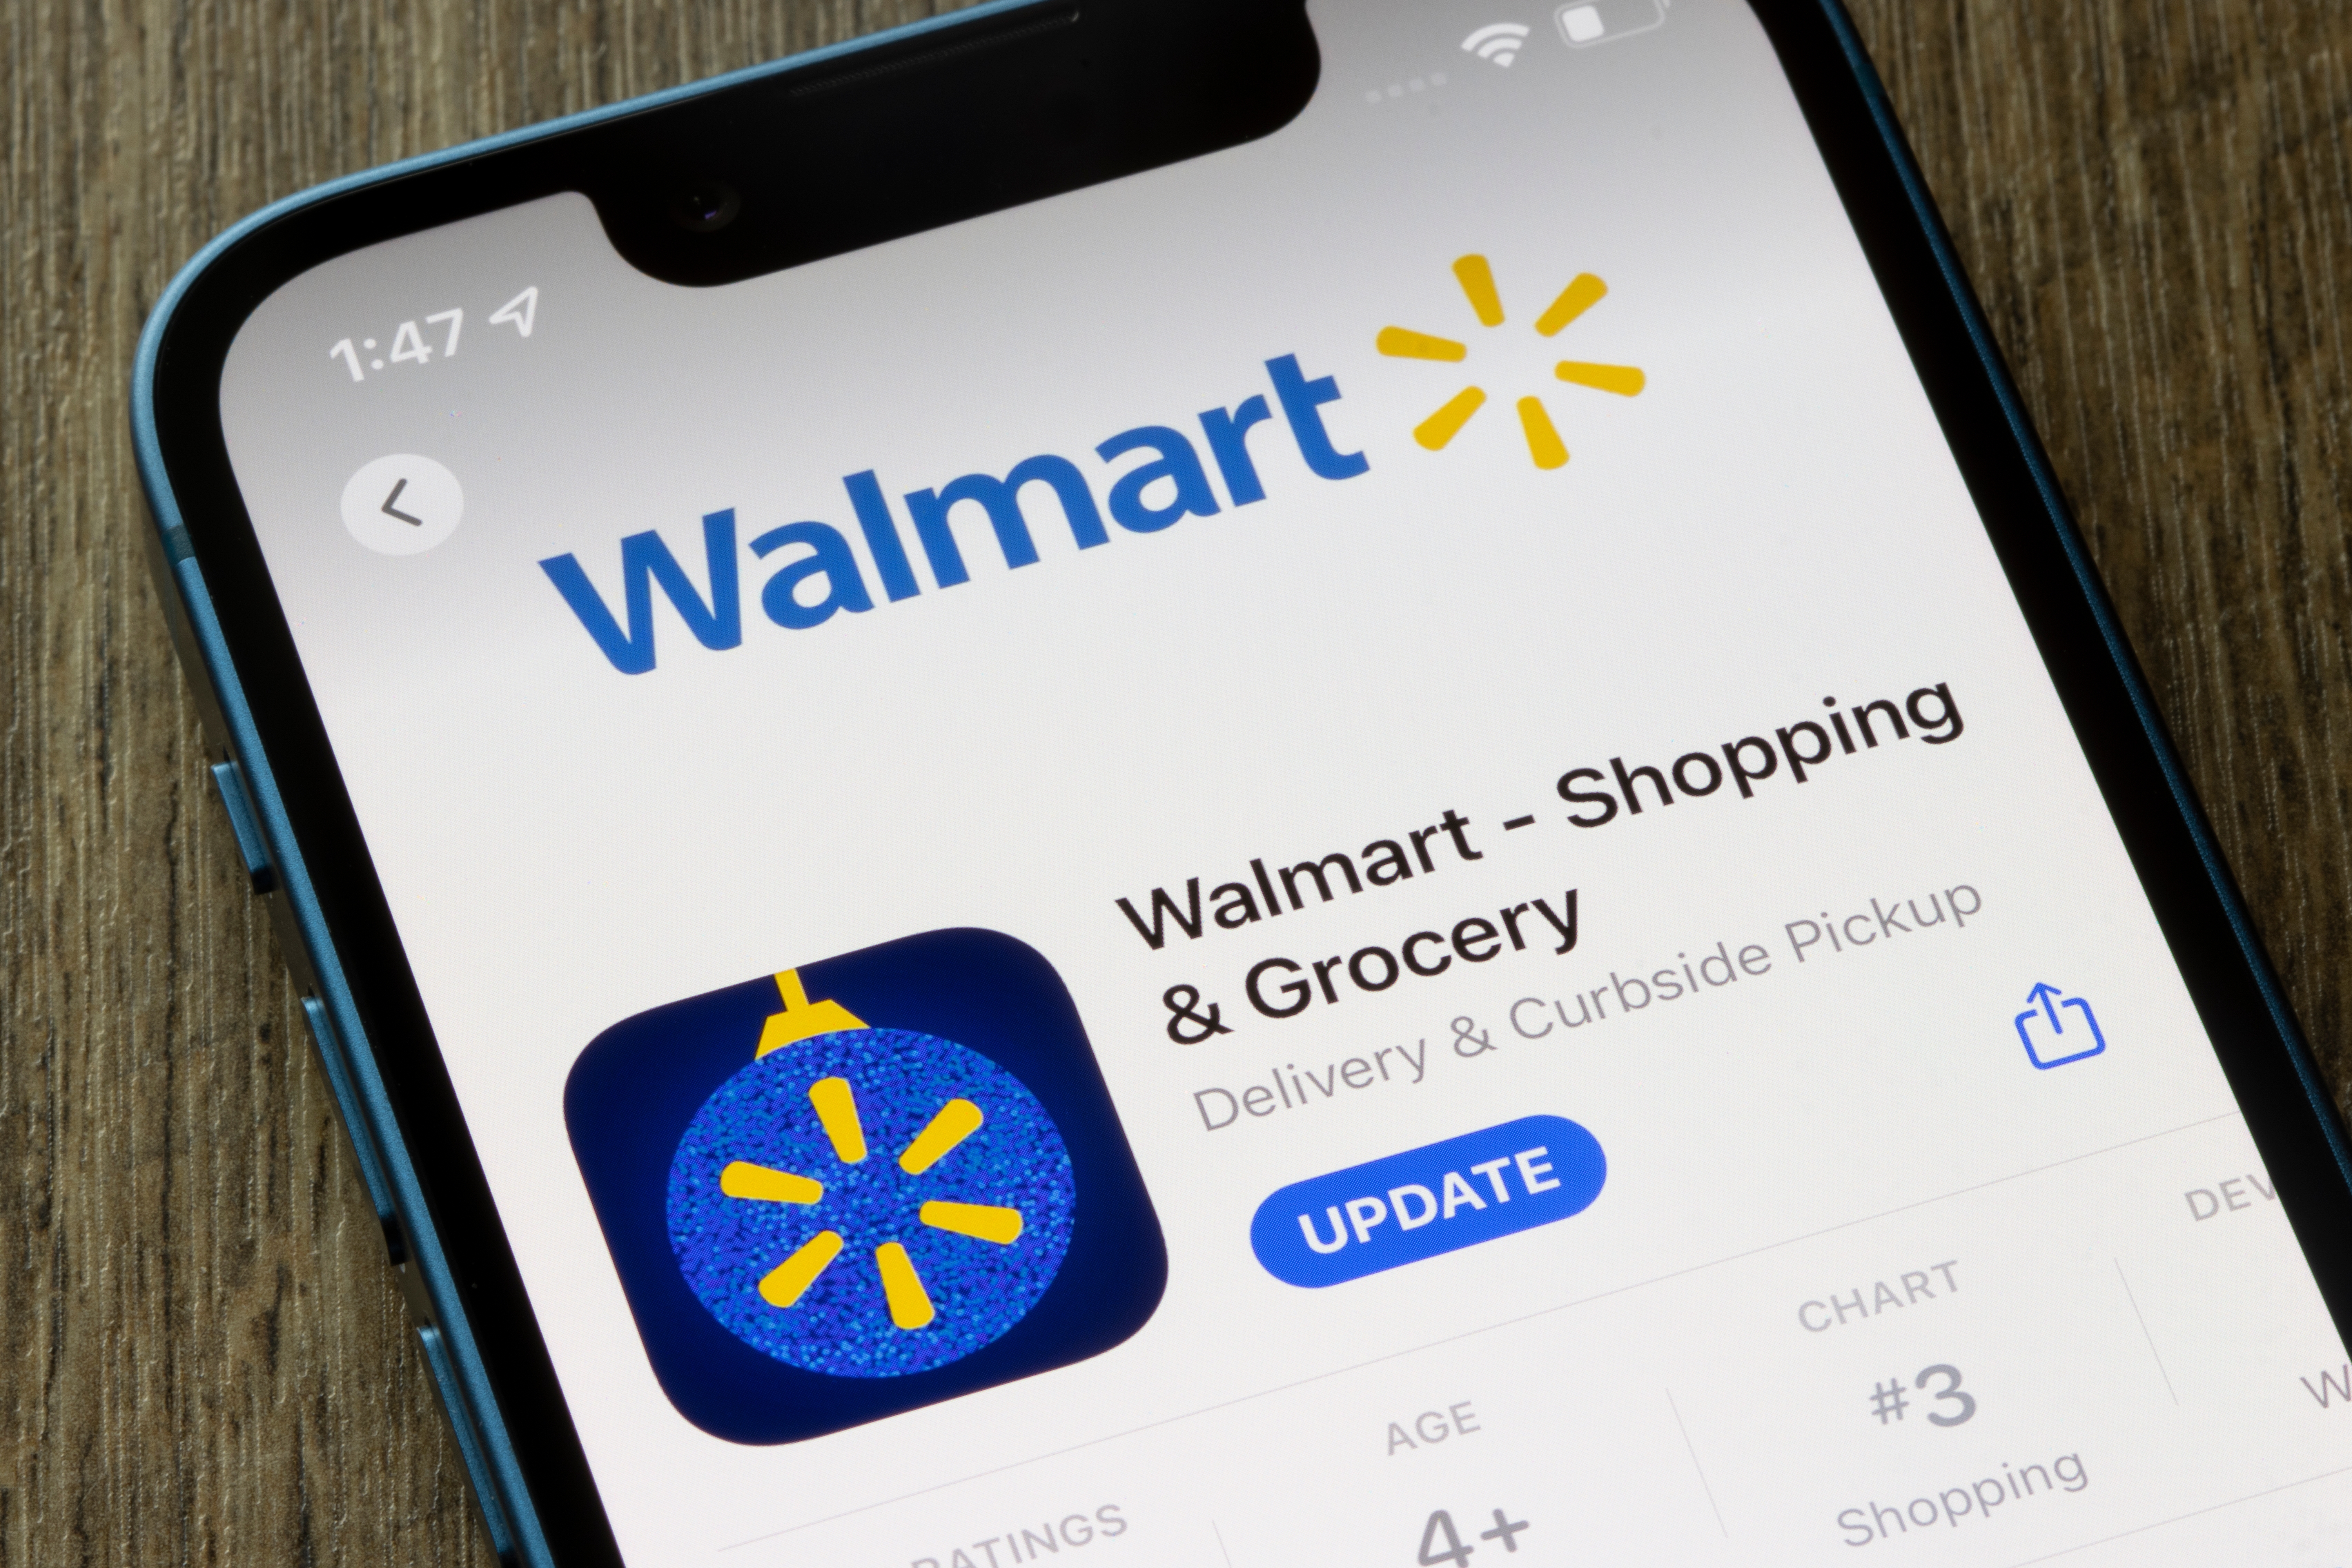 Smartphone showing the Walmart app